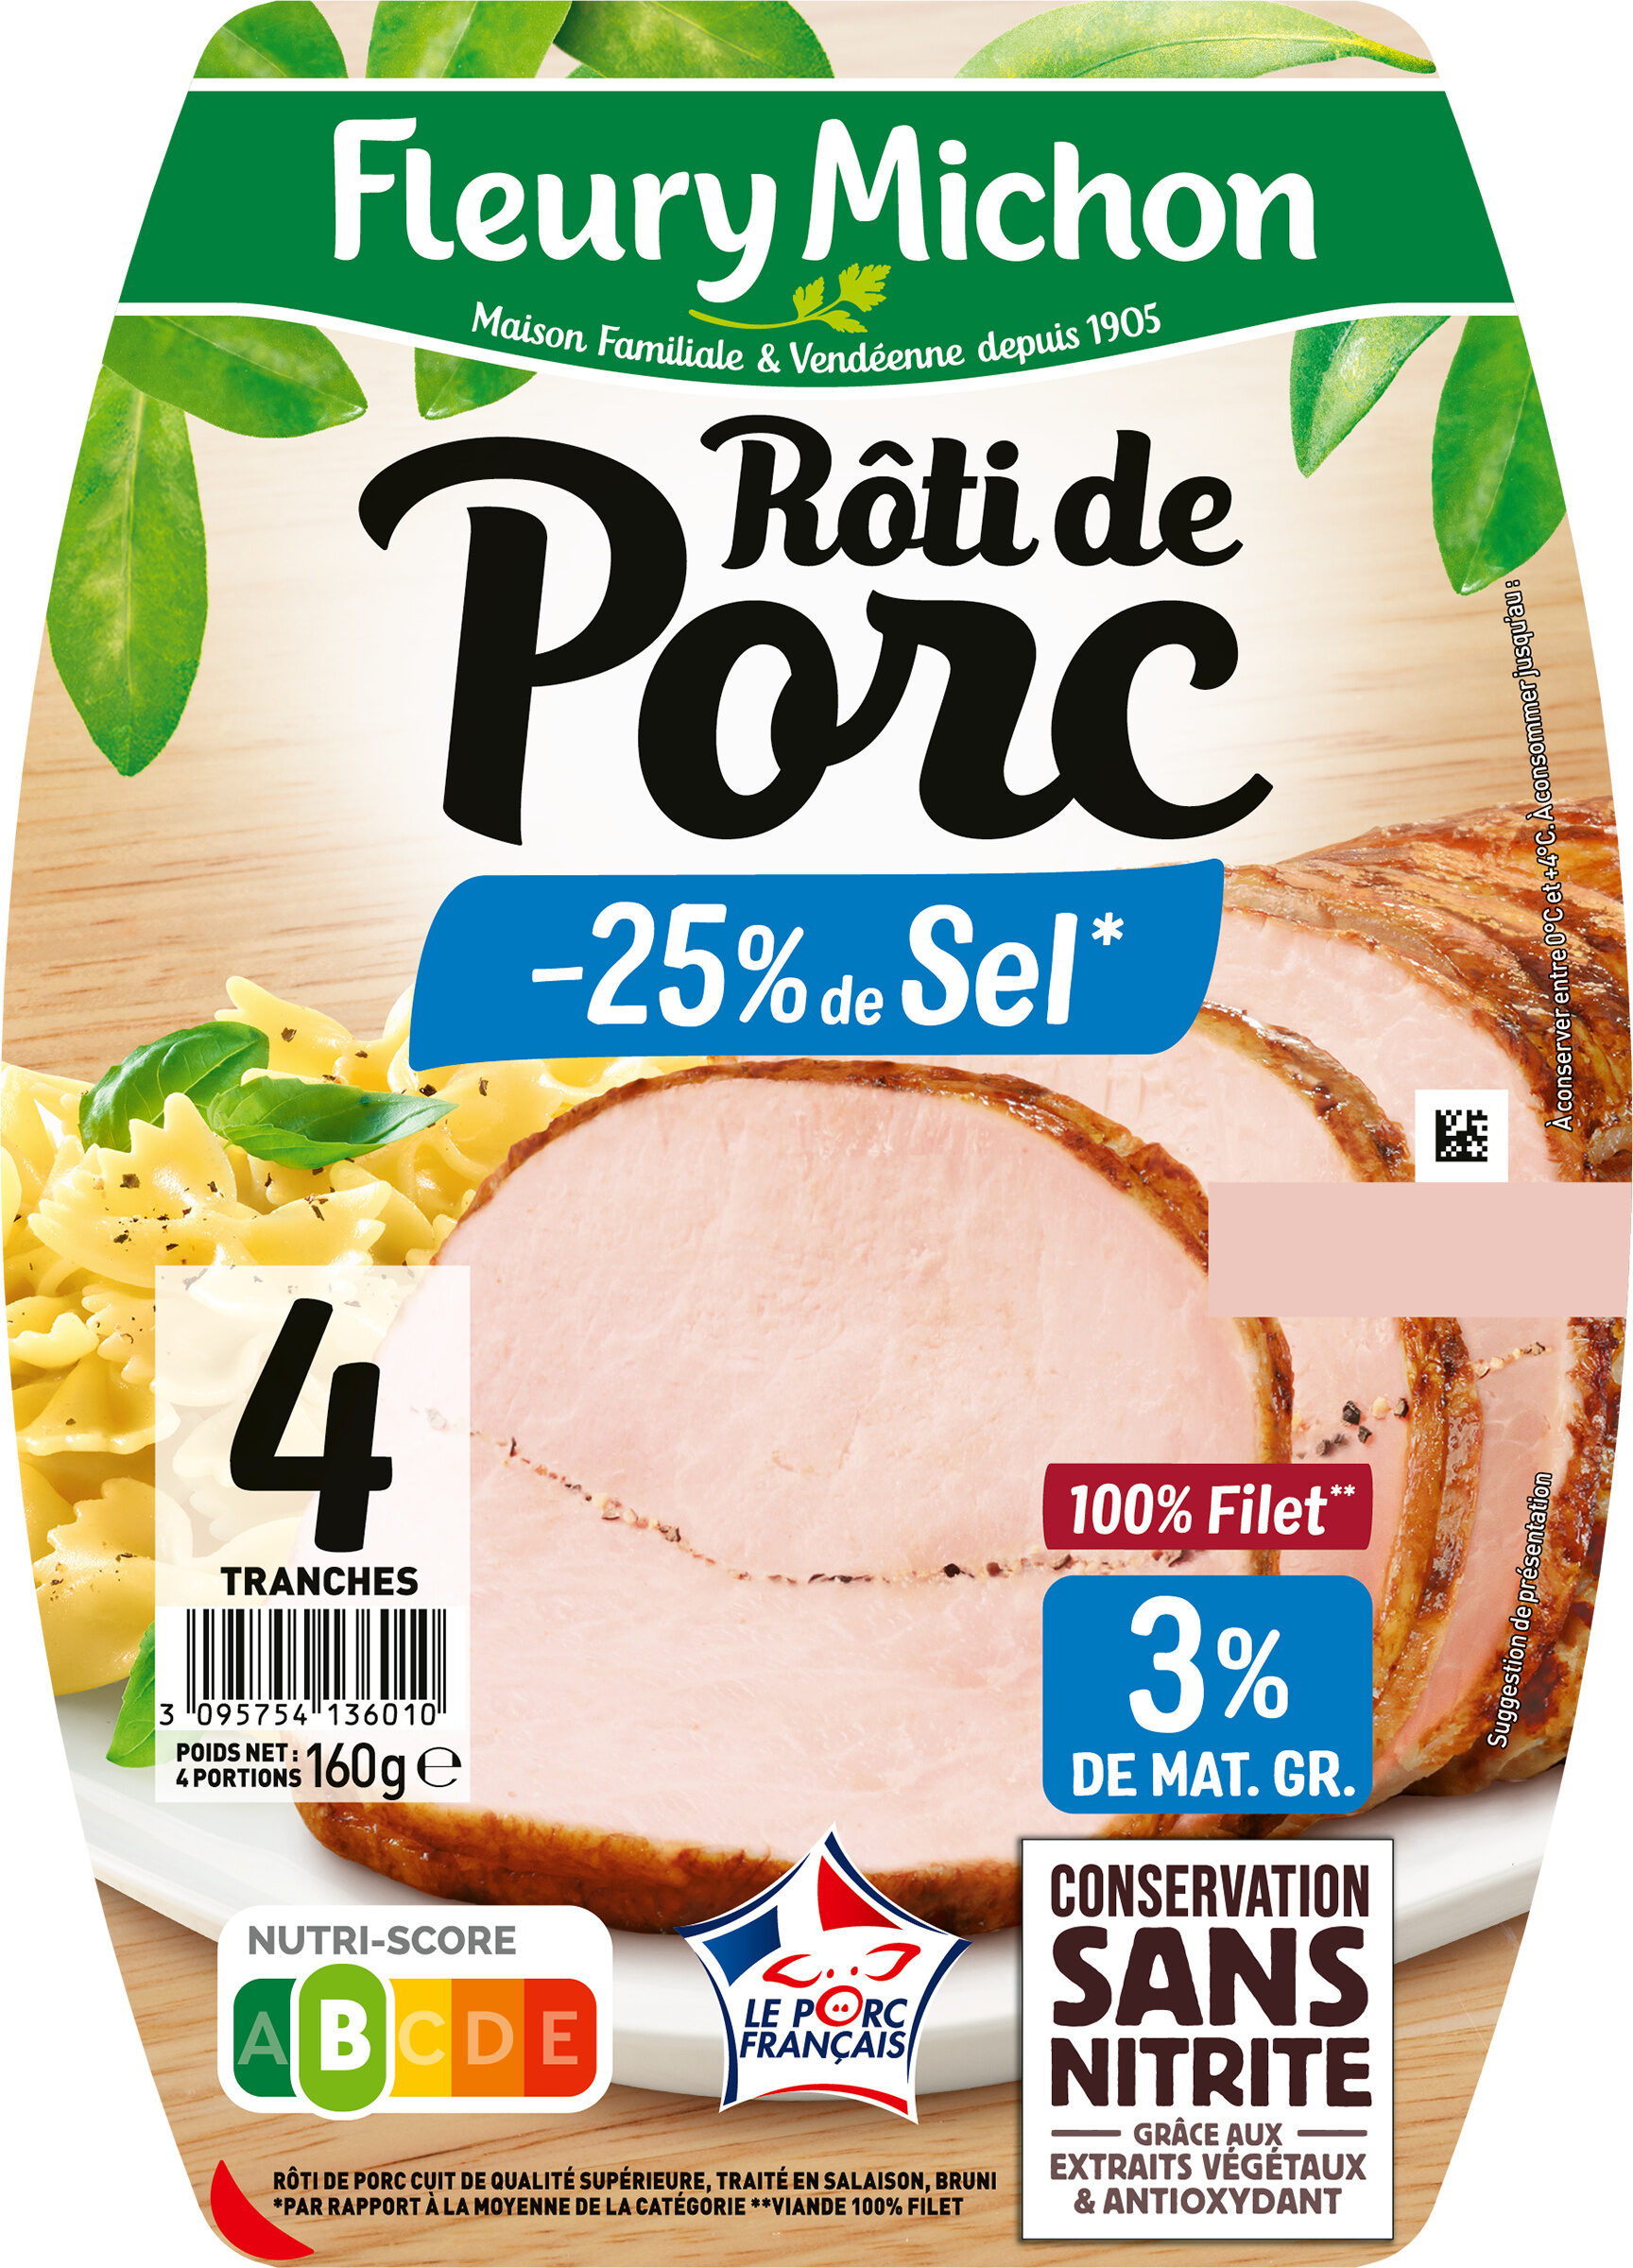 Rôti de Porc - 25% de sel* - Product - fr